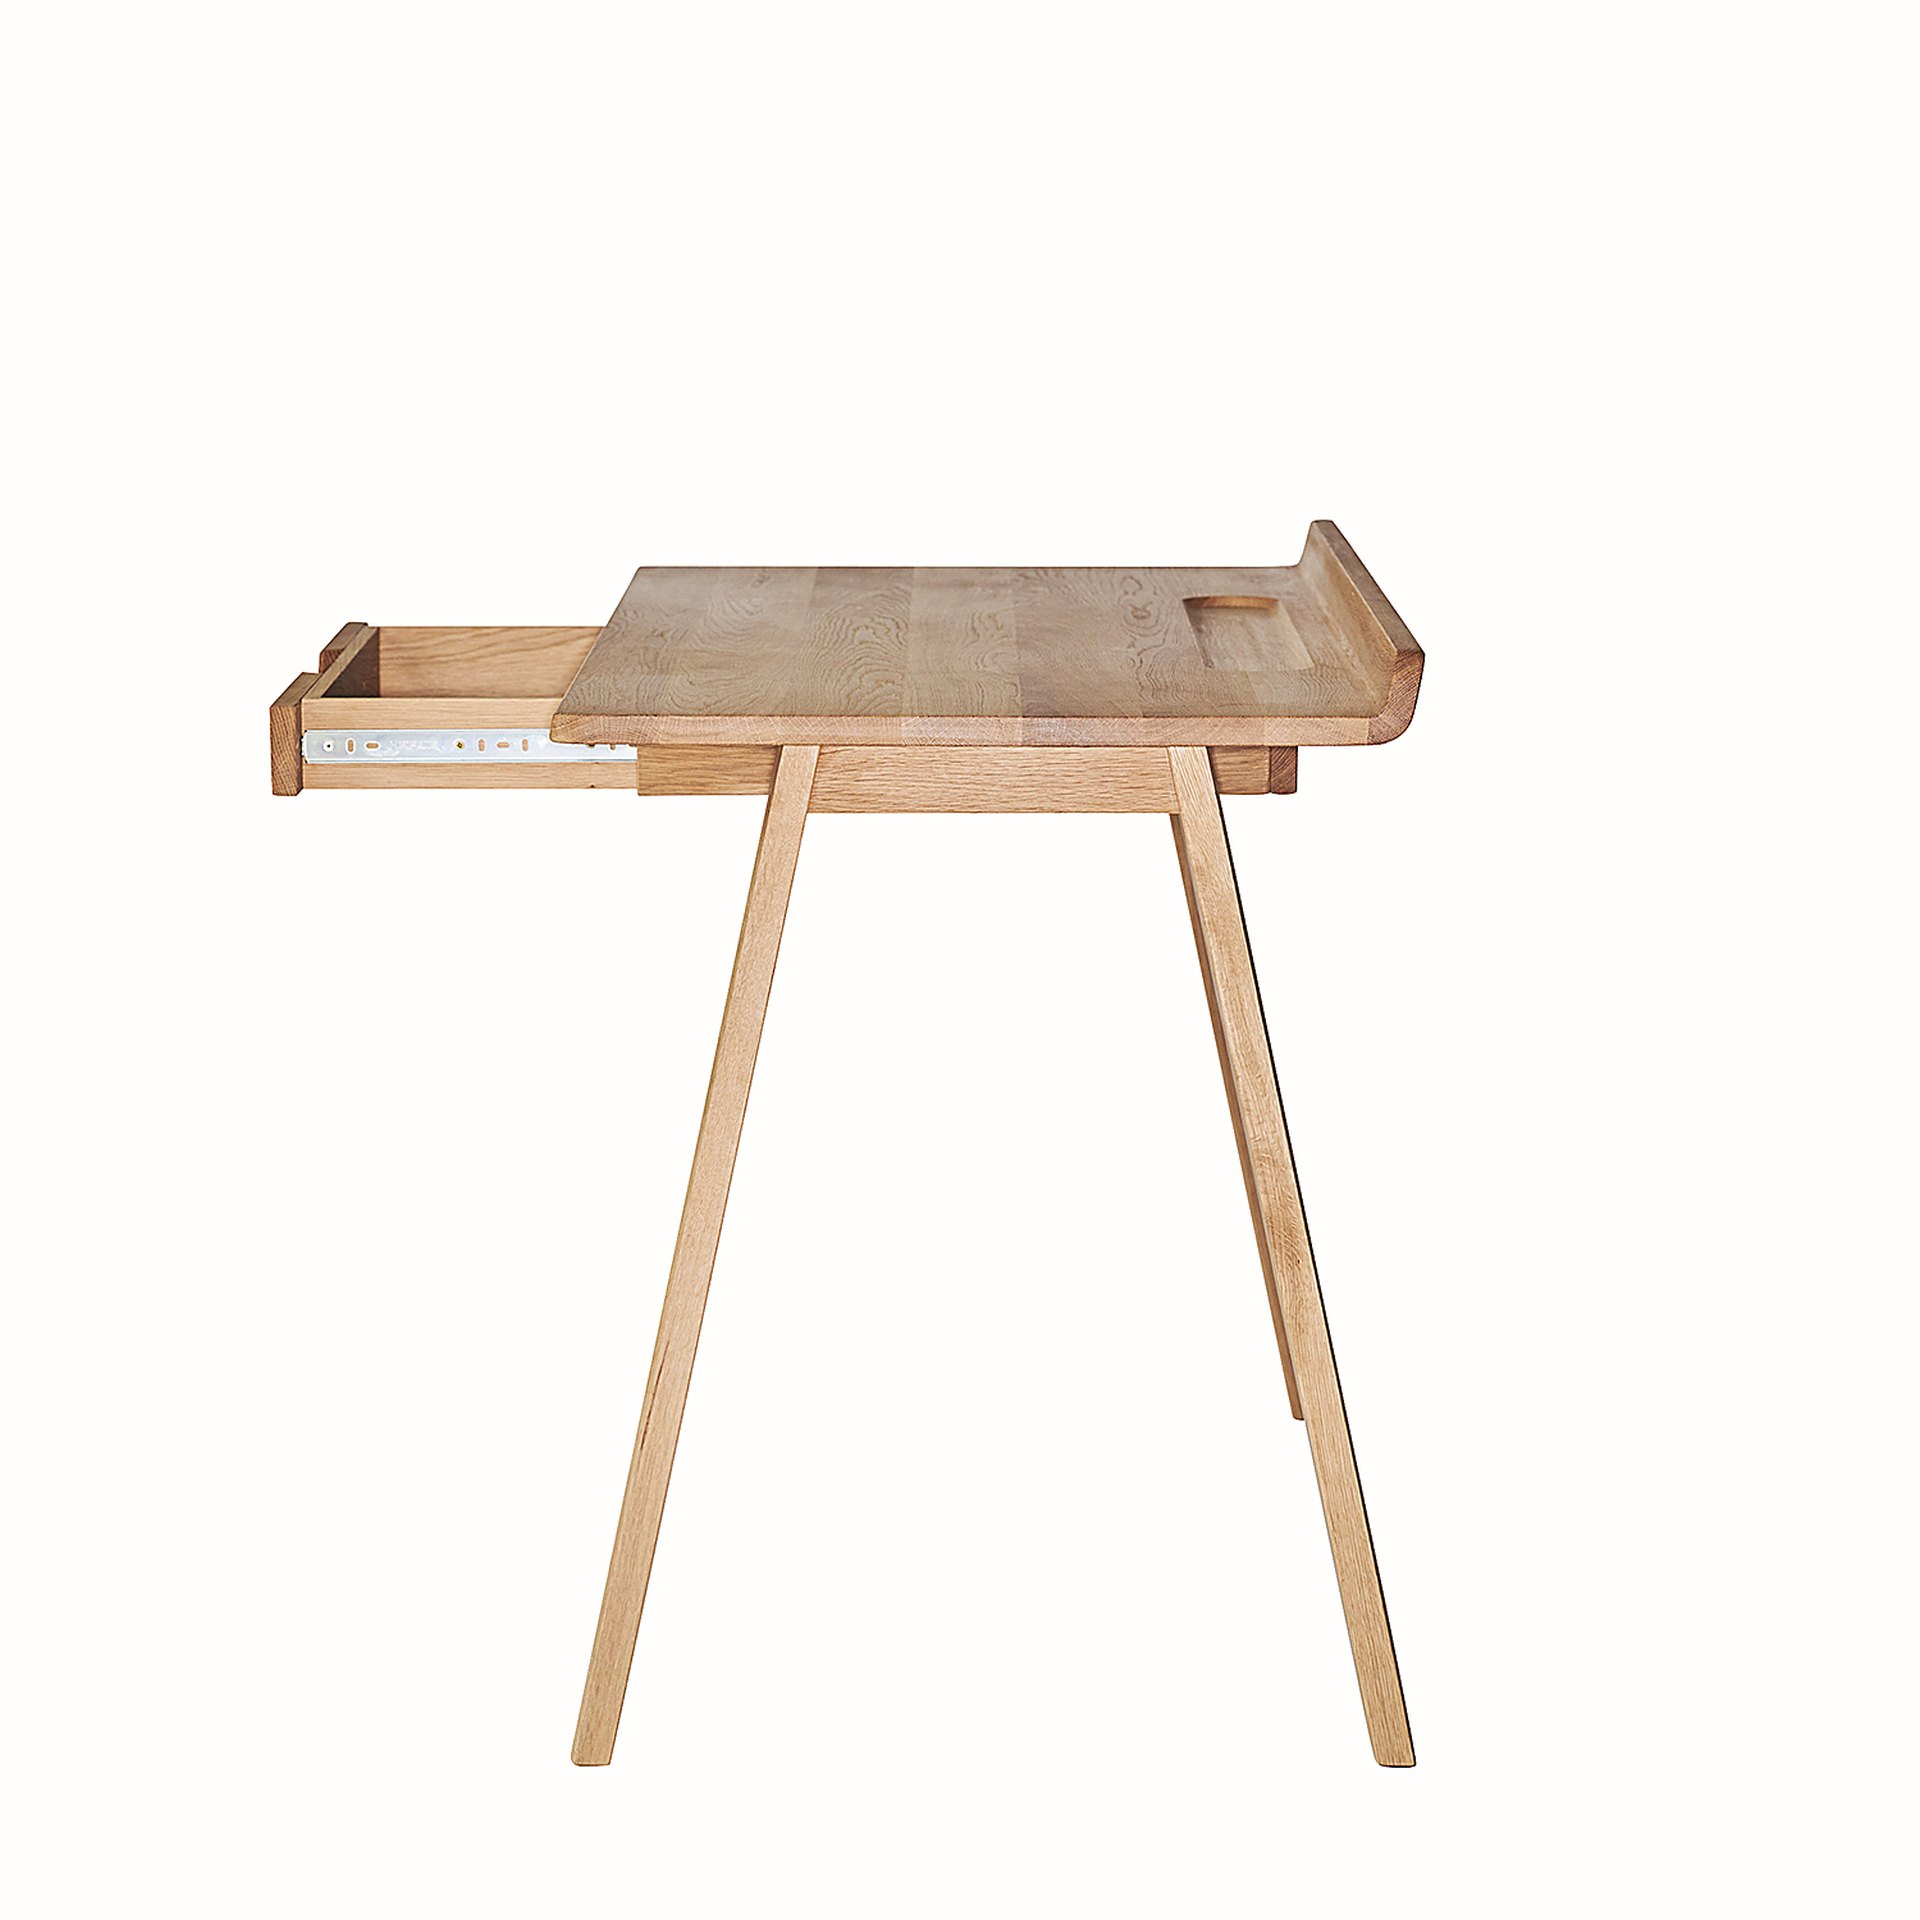 Der Schreibtisch Nara in einem skandinavischen Design wurde aus Eichenholz hergestellt. Designet wurde der Tisch von der Marke Jan Kurtz. Der Tisch verfügt über eine Schublade für zusätzlichen Stauraum.